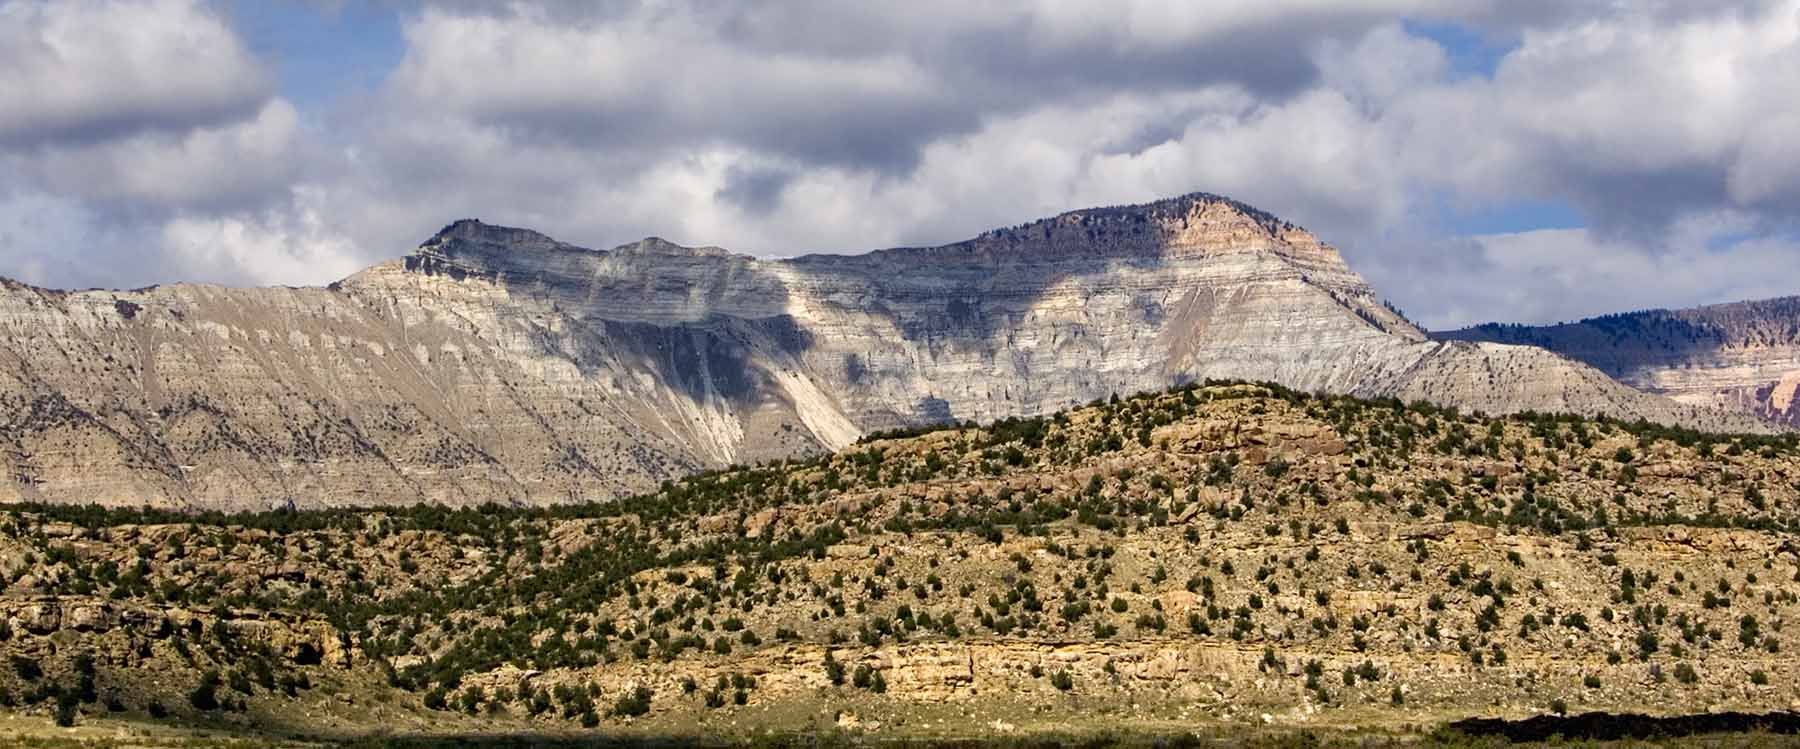 Battlement Mesa in Colorado